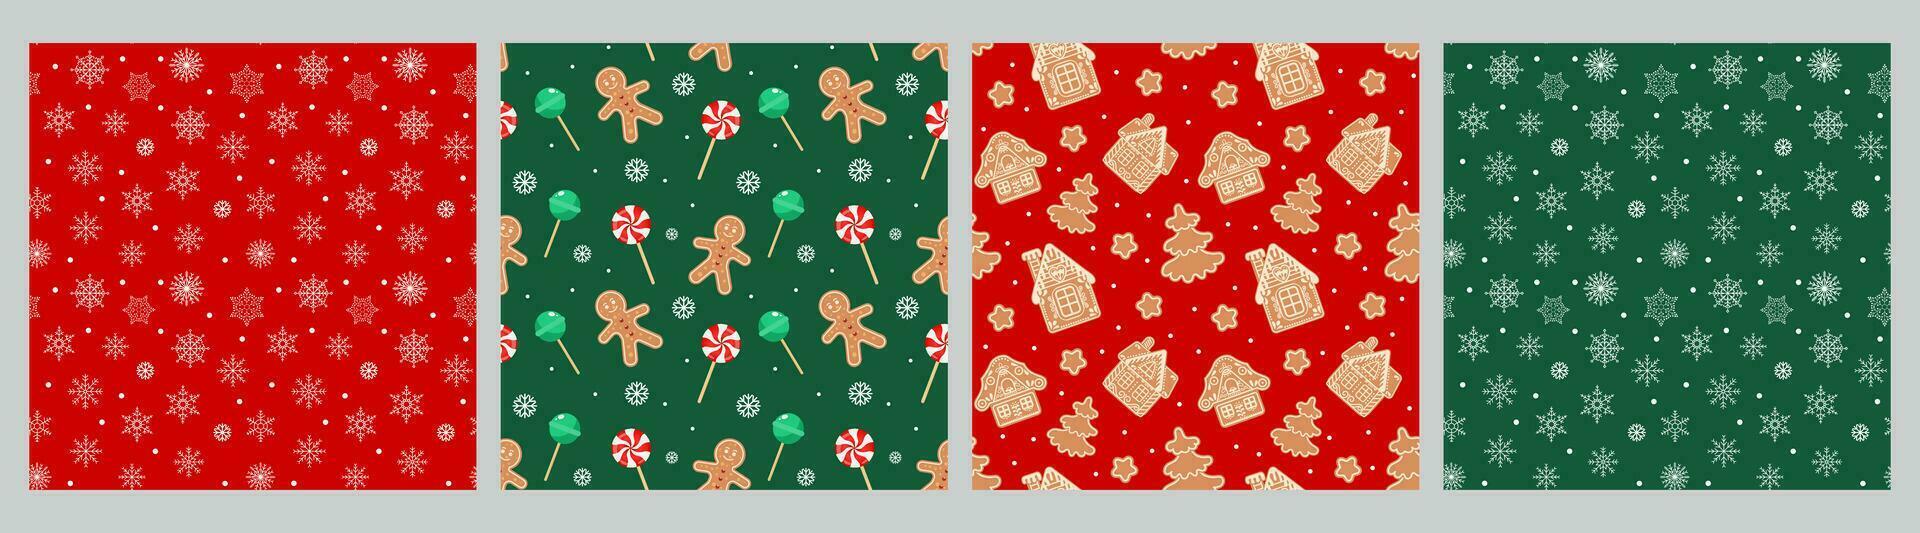 samling av jul sömlös mönster med pepparkaka män, hus, snöflingor, jul godis och strumpor. uppsättning av Semester bakgrunder, vektor